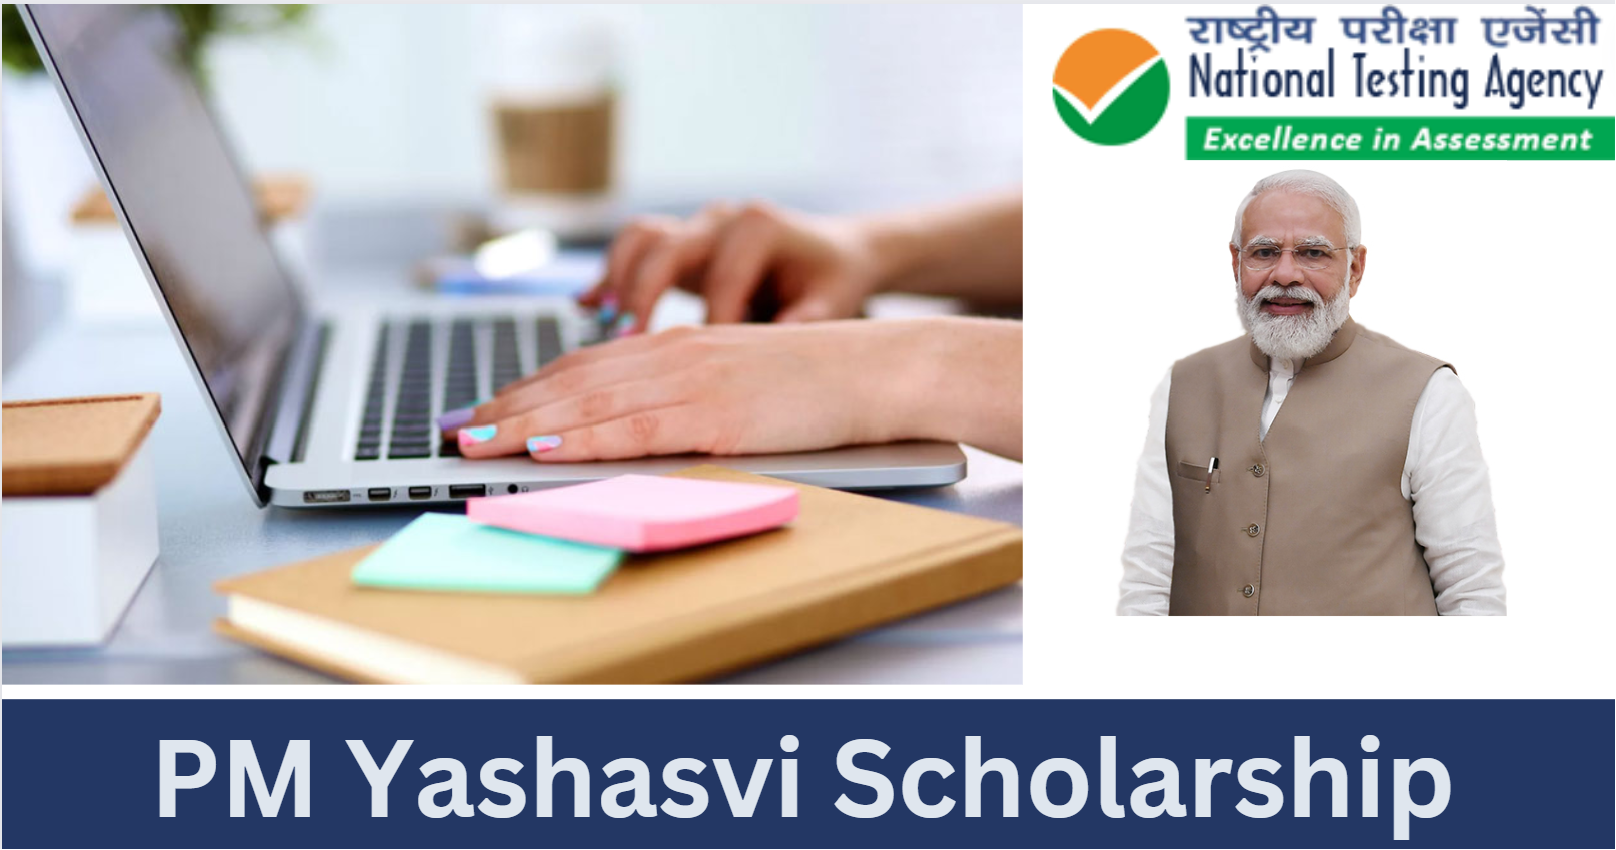 PM Yashasvi Scholarship 2024